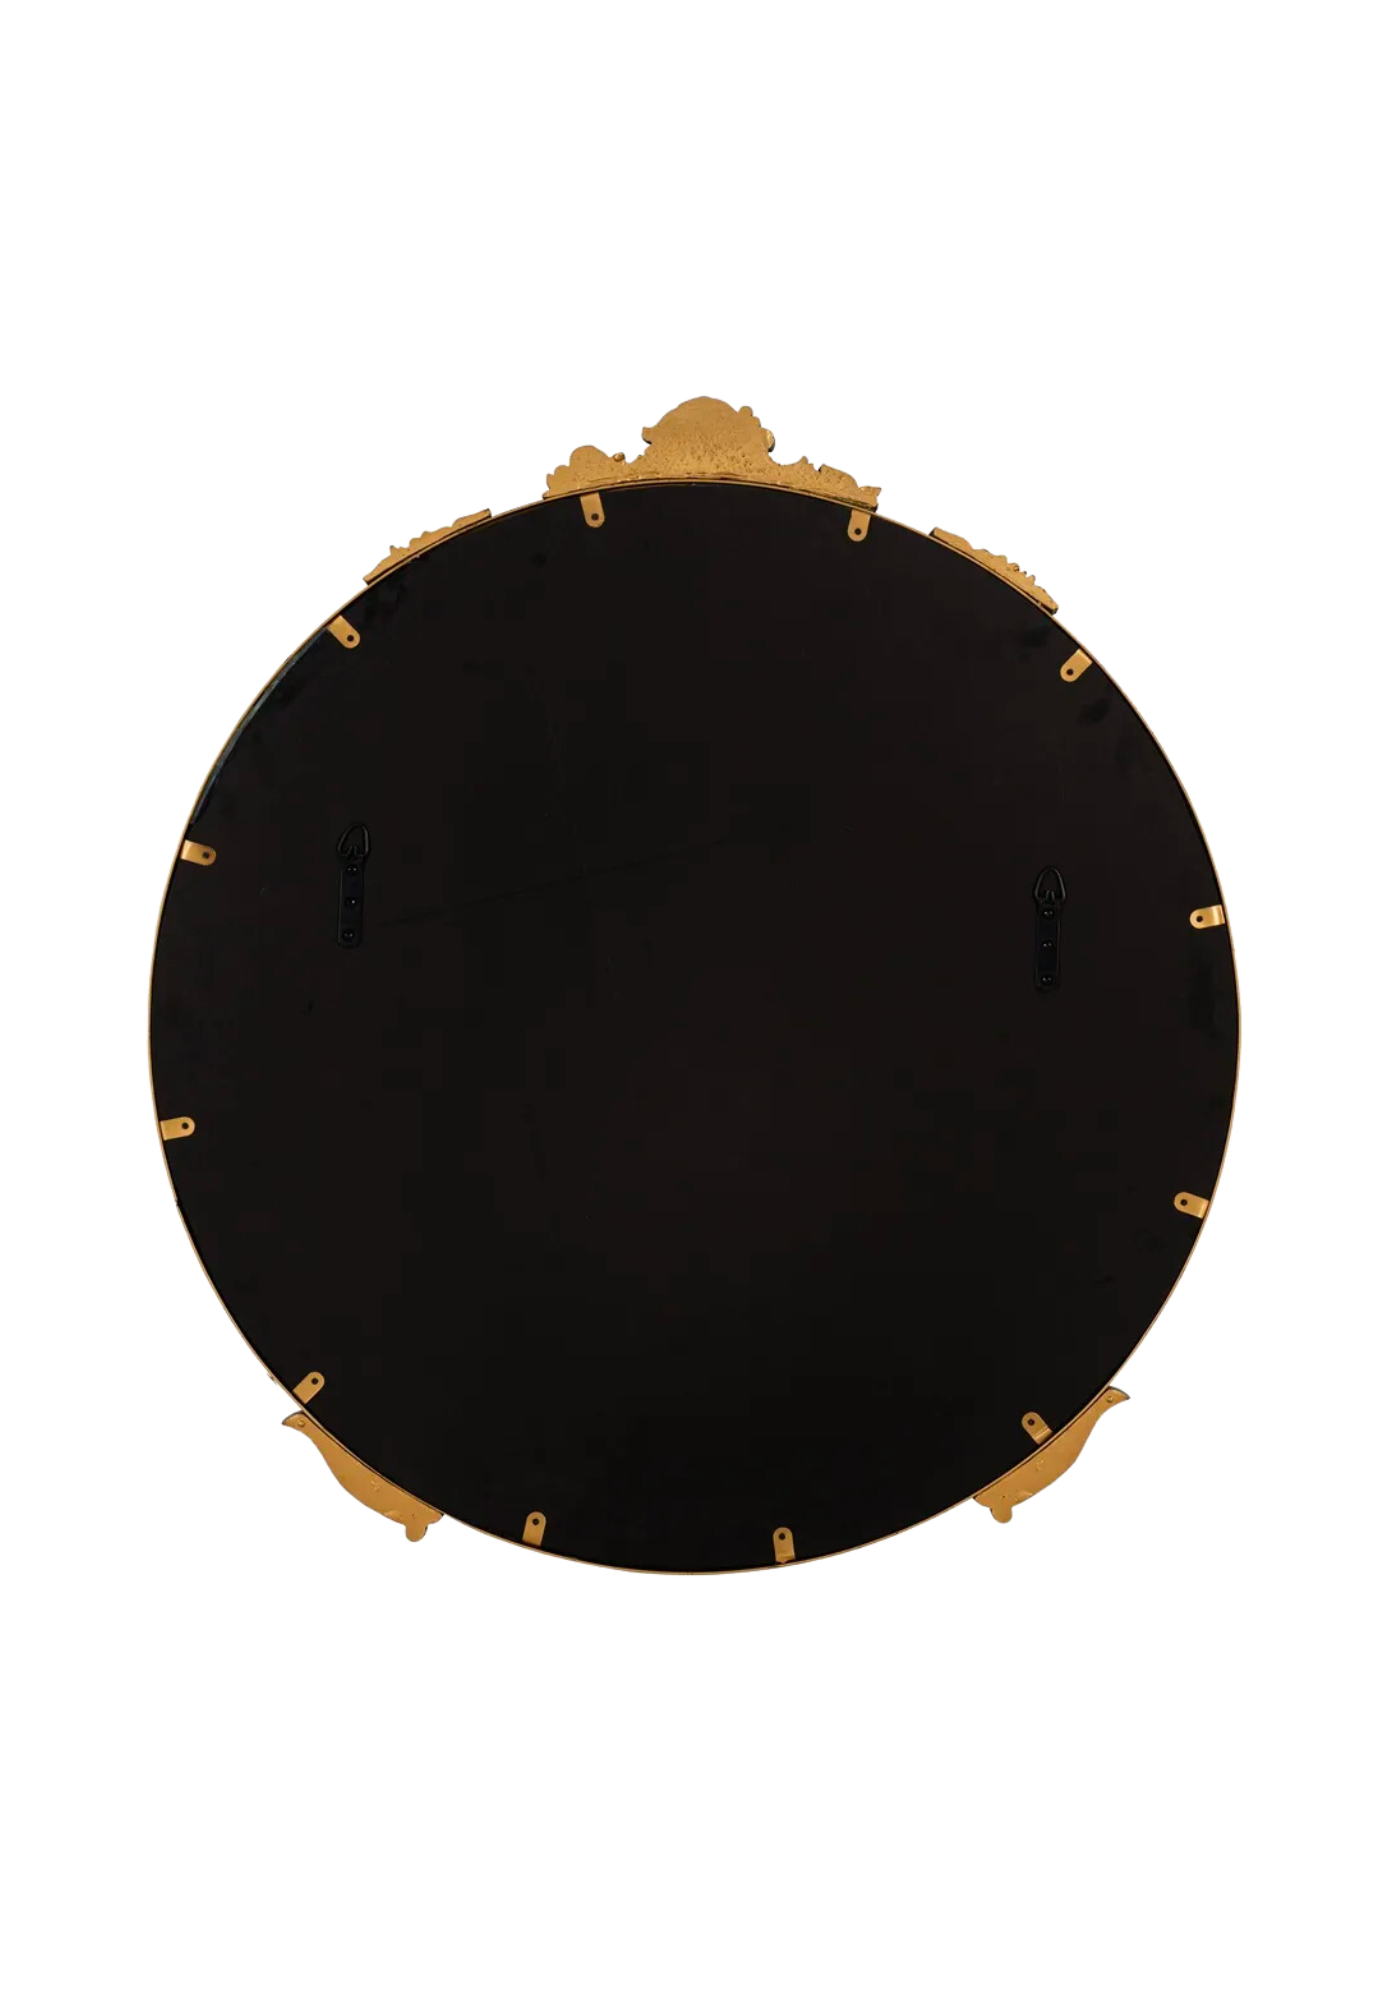 Ornate Gold Antique Round Mirror